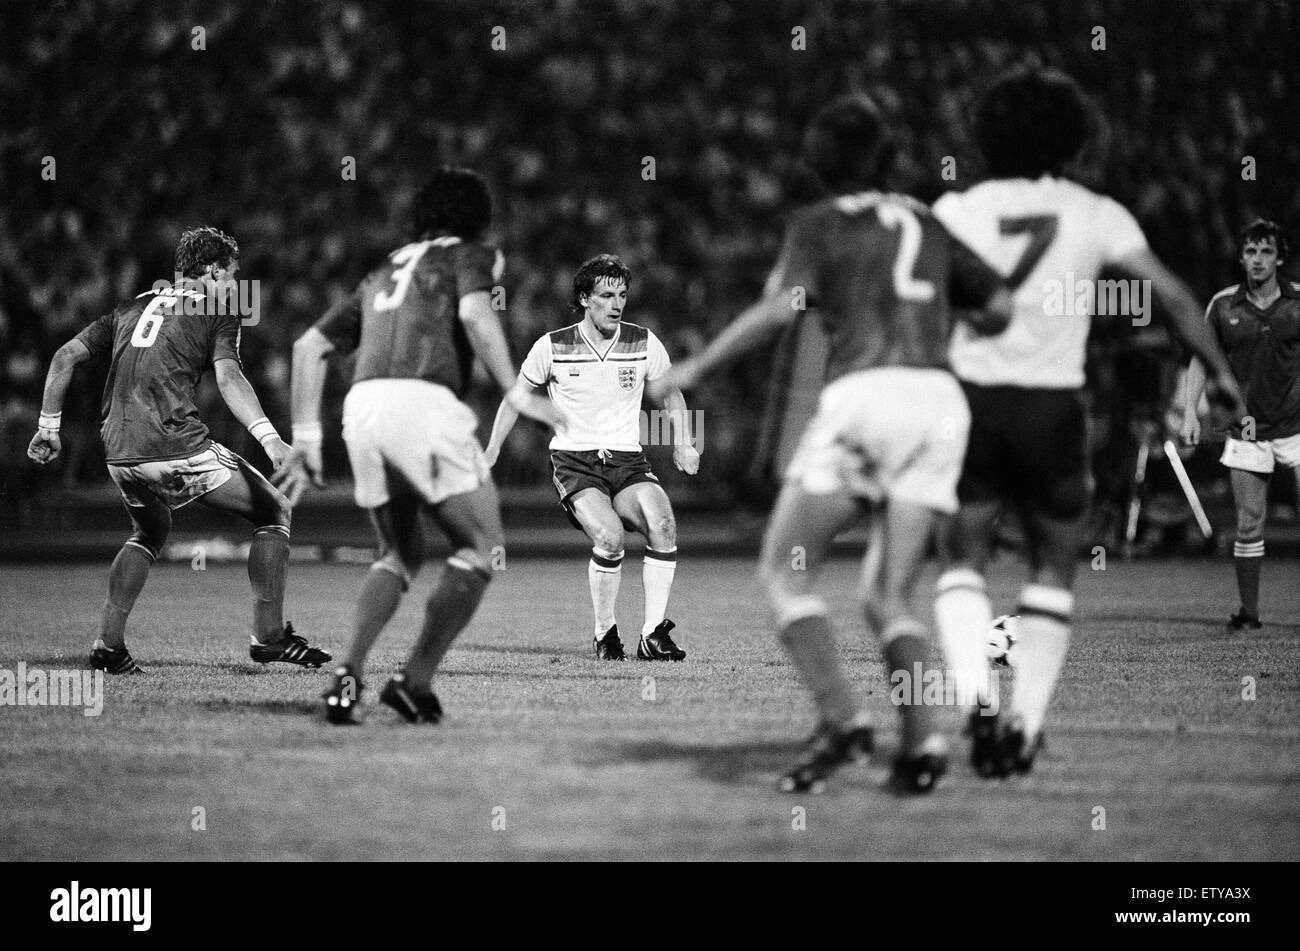 England Ungarn 1-3, Gruppe 4 World Cup Qualifier, match bei Nepstadion, Budapest, Ungarn, Samstag, 6. Juni 1981. Stockfoto